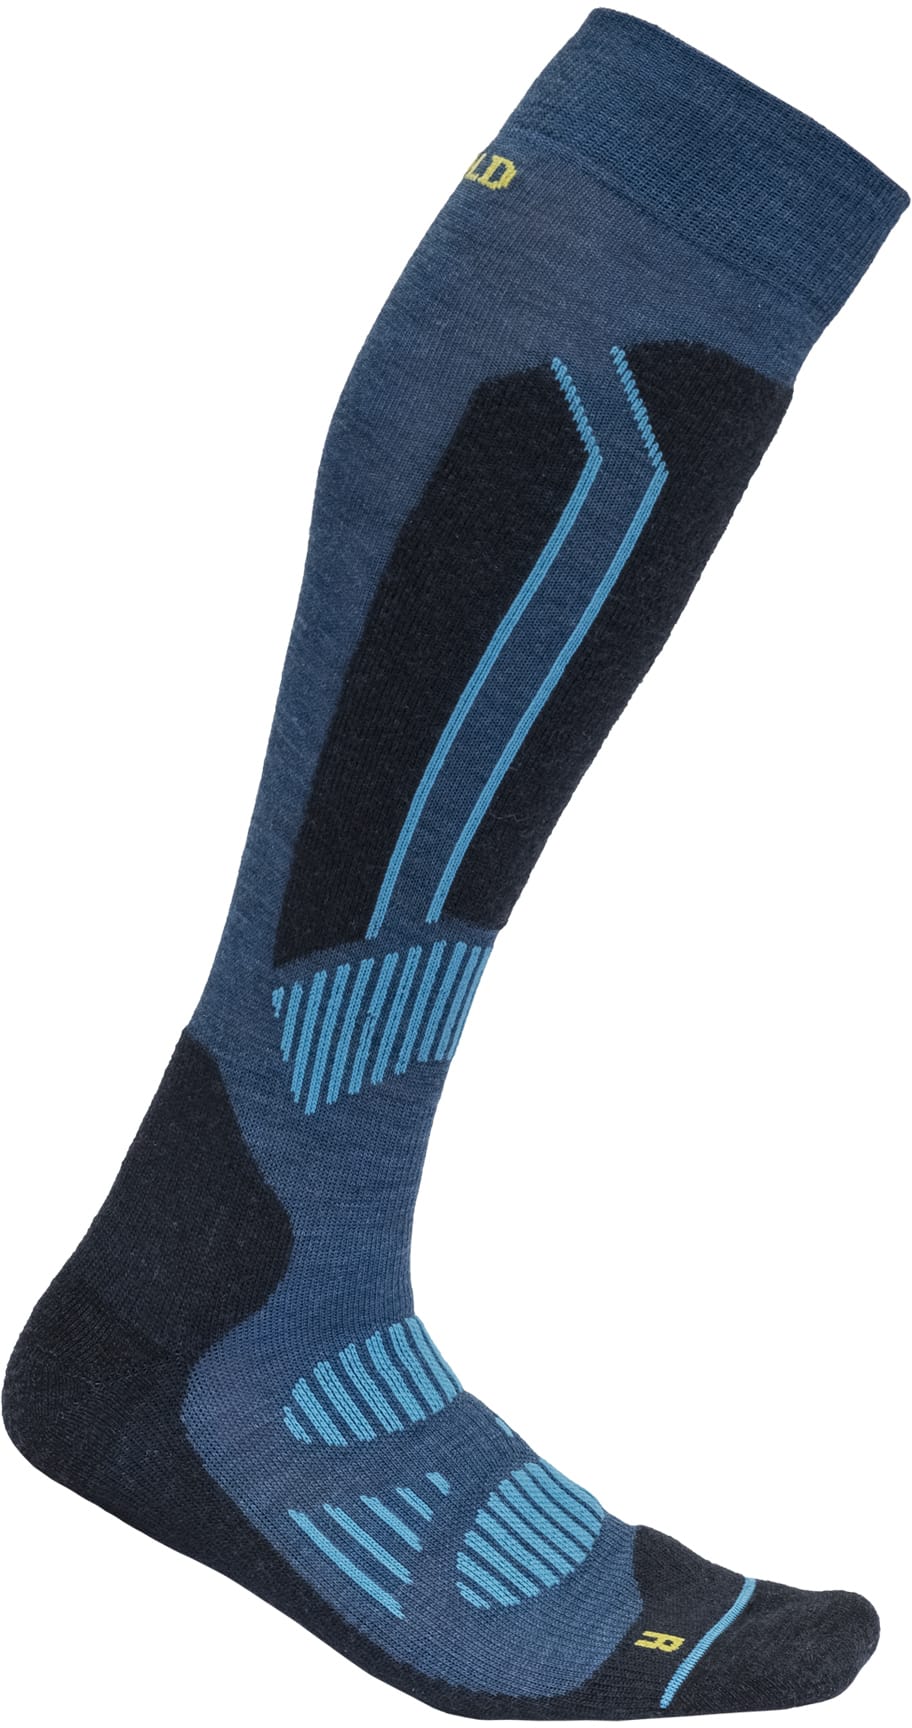 Devold Alpine Merino skisokk - socks